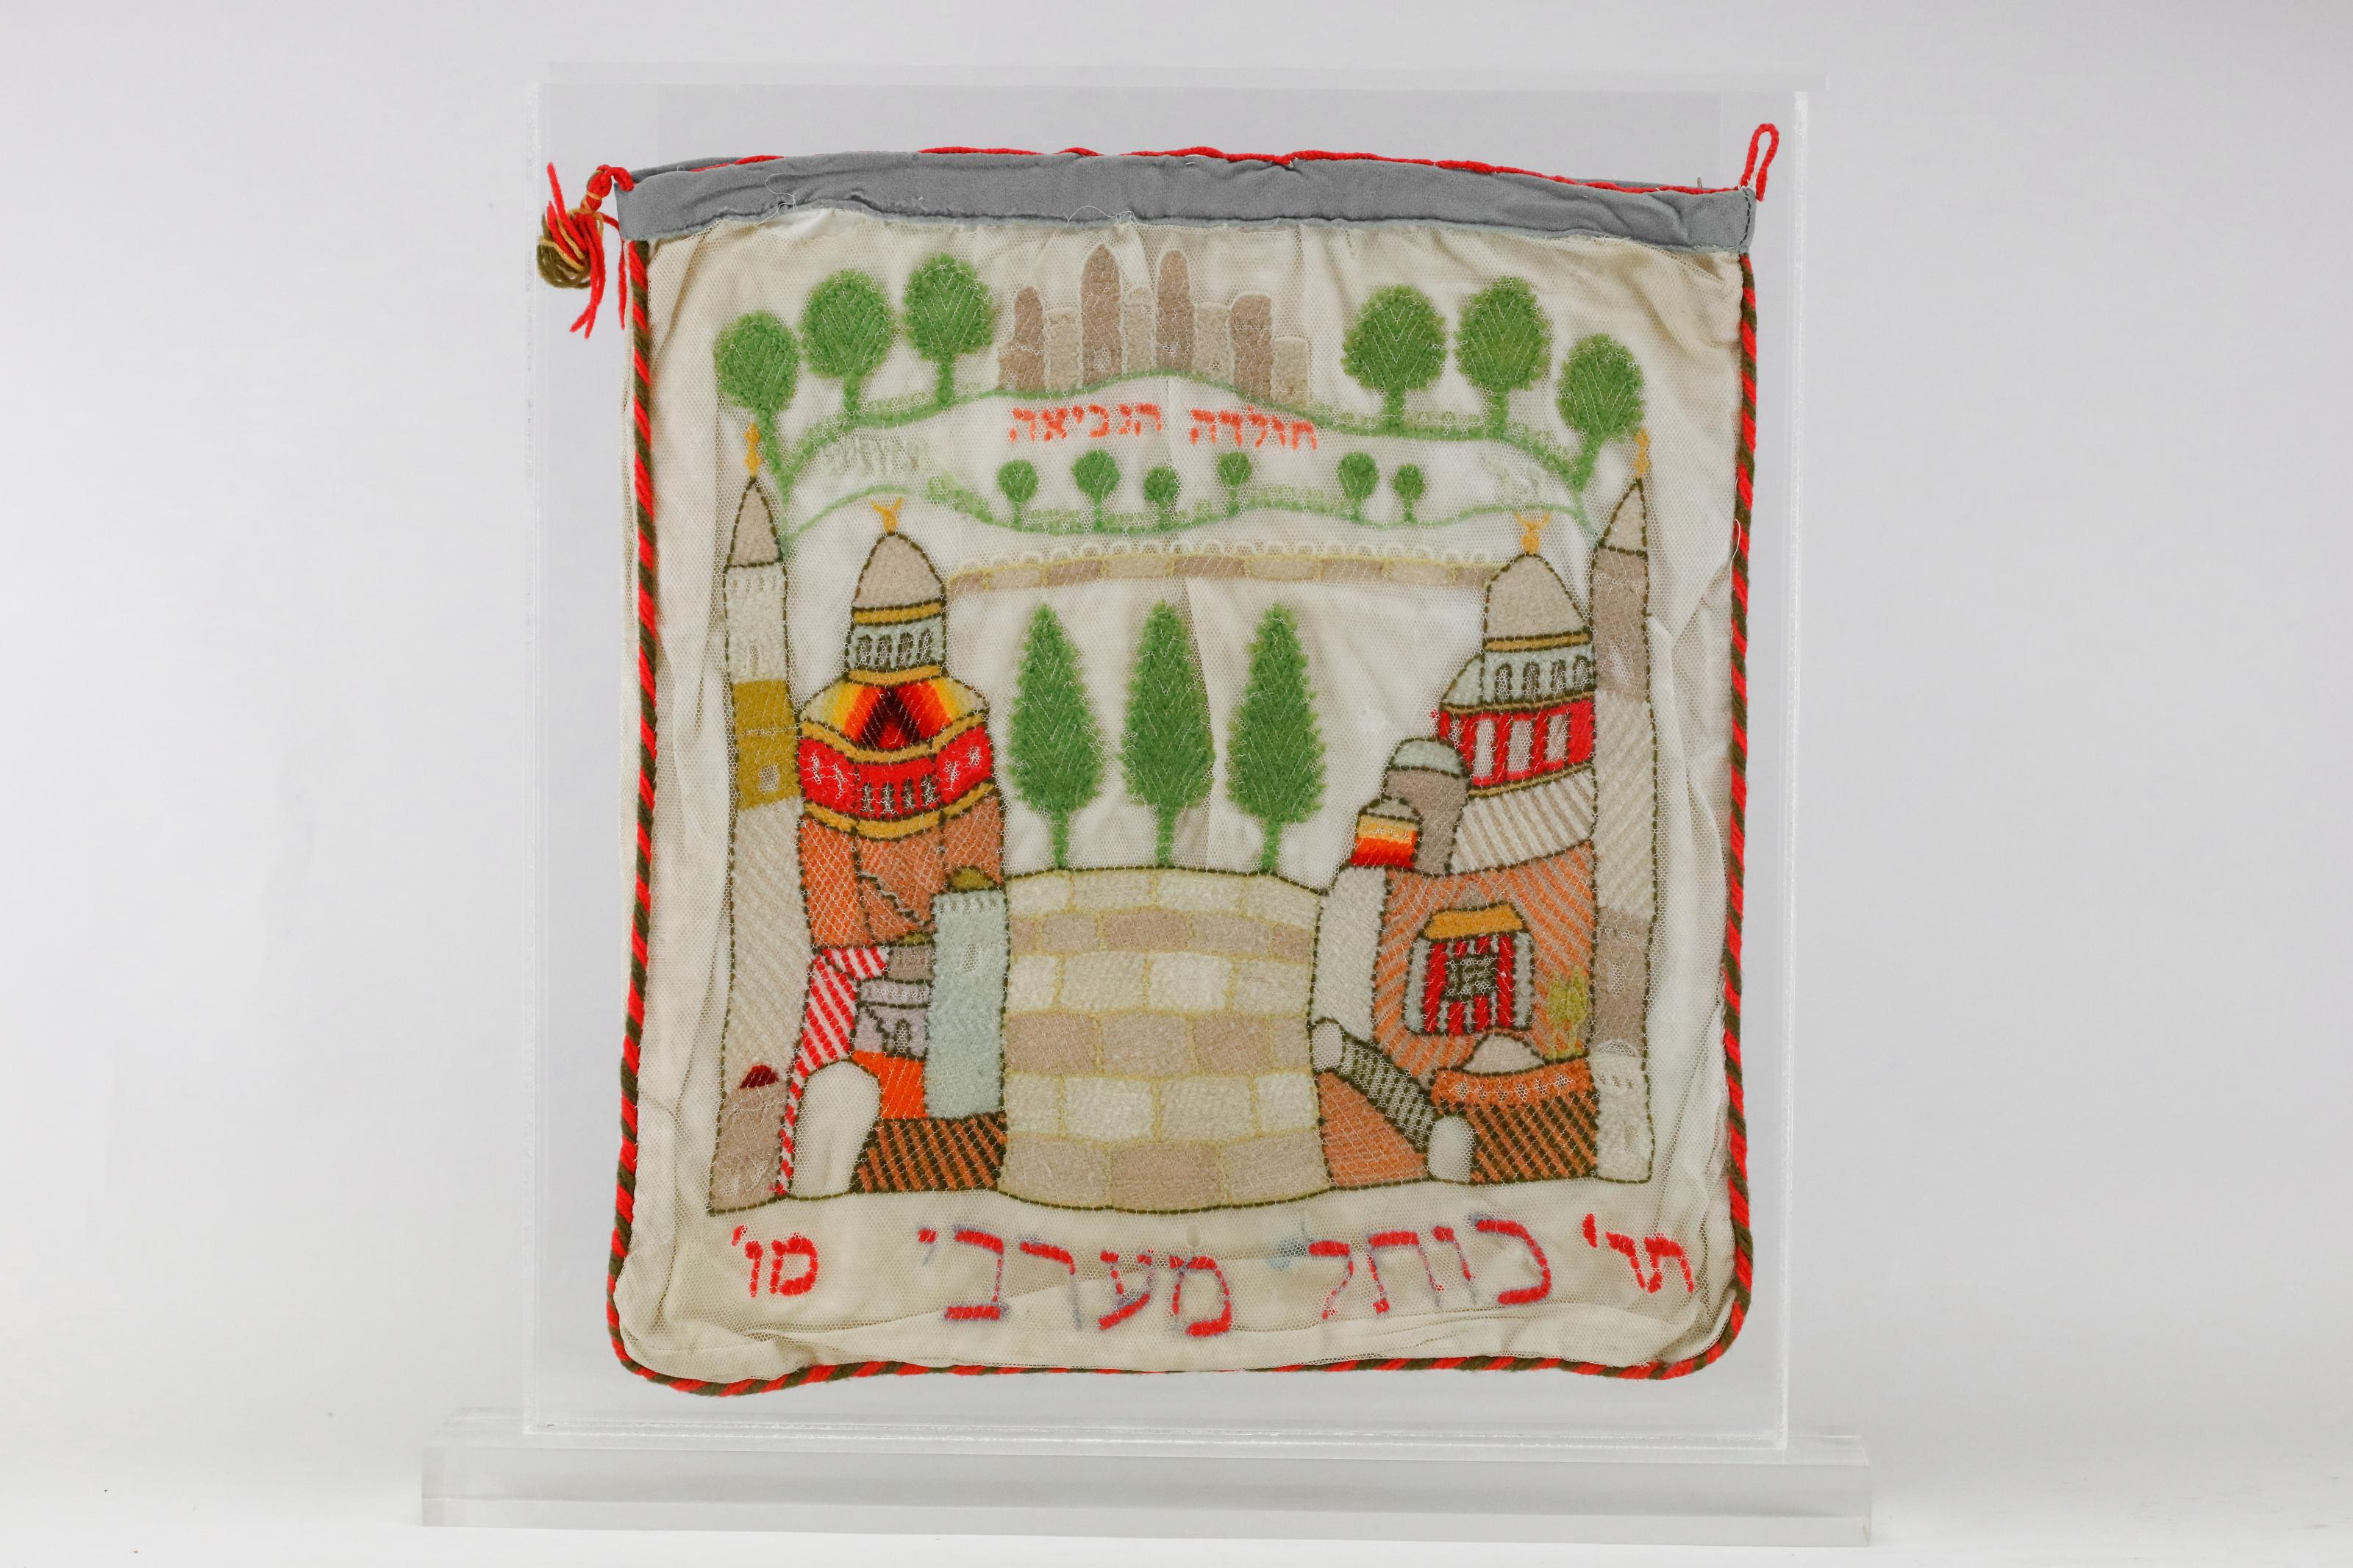 Ein kompliziertes Jerusalemer Textil, hergestellt in Jerusalem, 1886.
Doppelseitige große Tasche. Wollfaden auf Baumwollnetz gestickt. Auf der einen Seite halten ein Löwe und ein Hirsch Fahnen mit der hebräischen Aufschrift Jerusalem